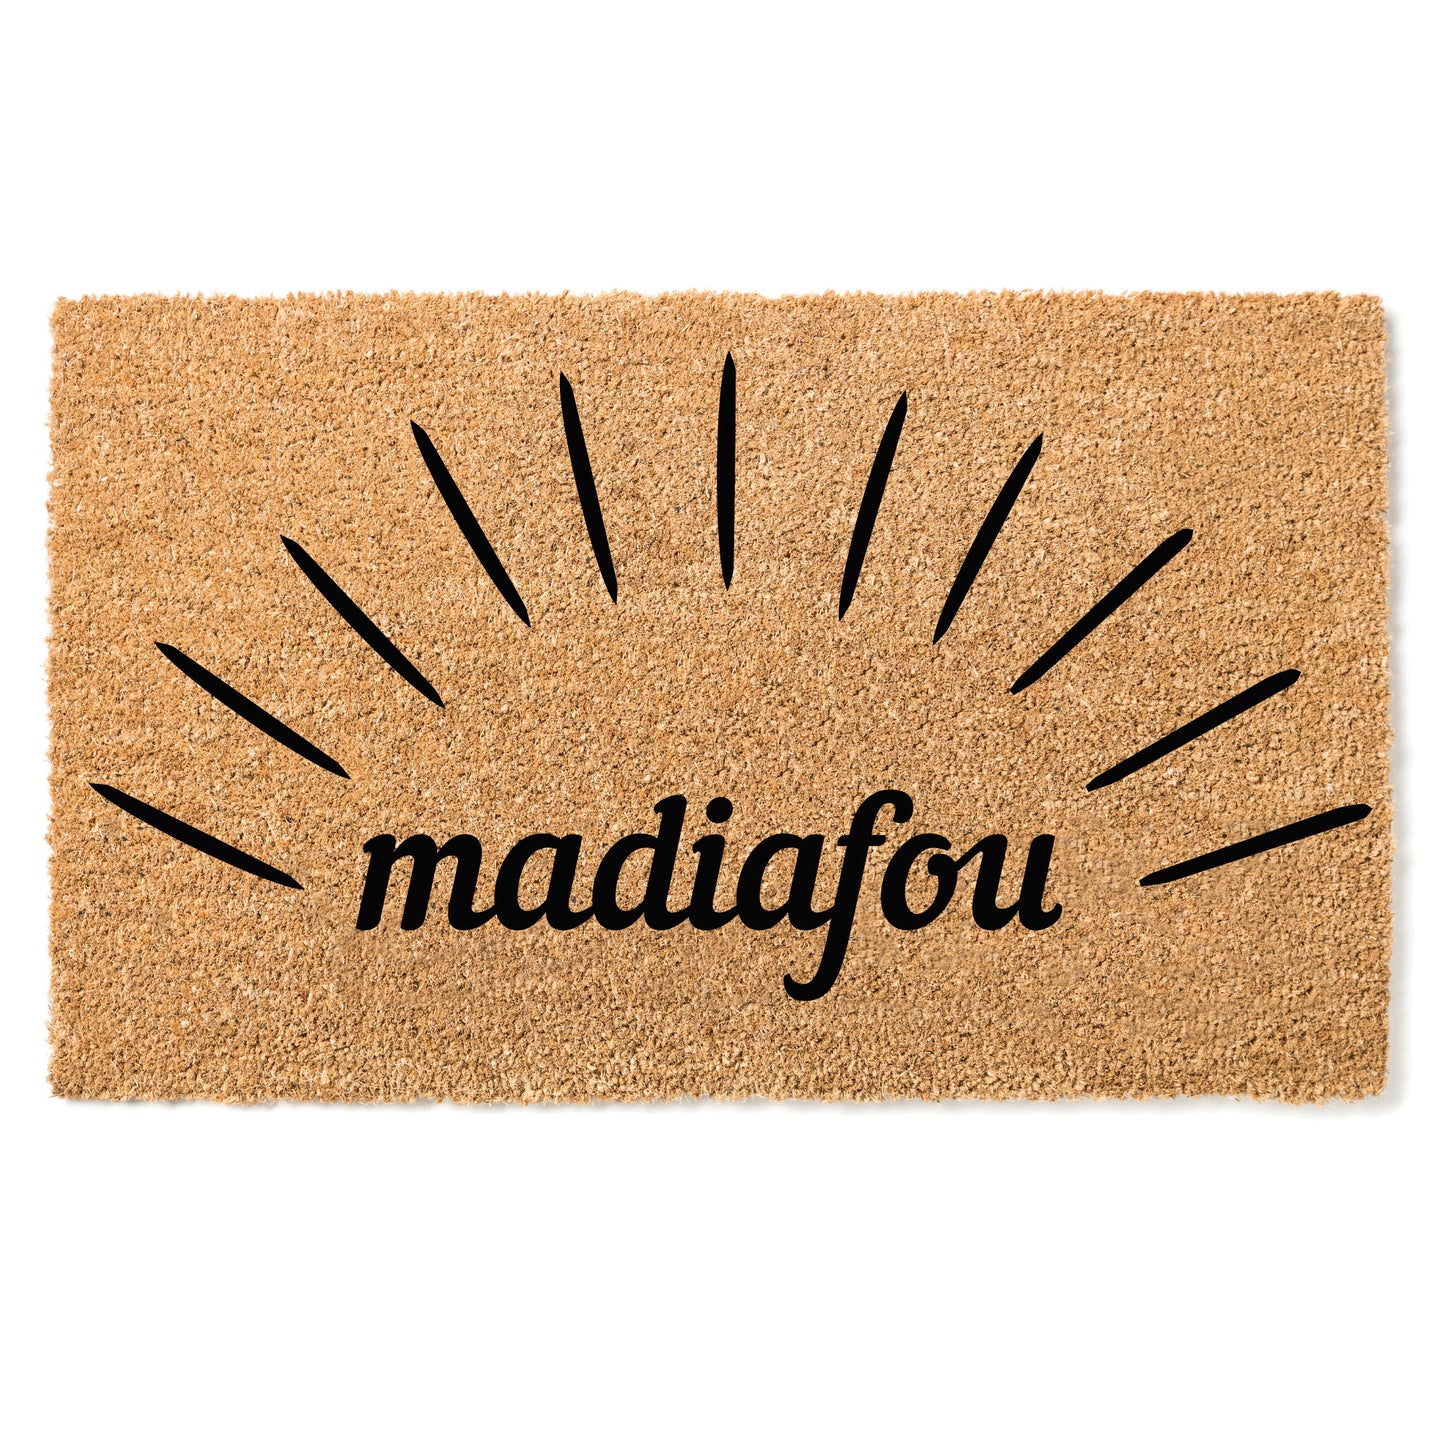 Madiafou door mat - Greeting in Tamasheq